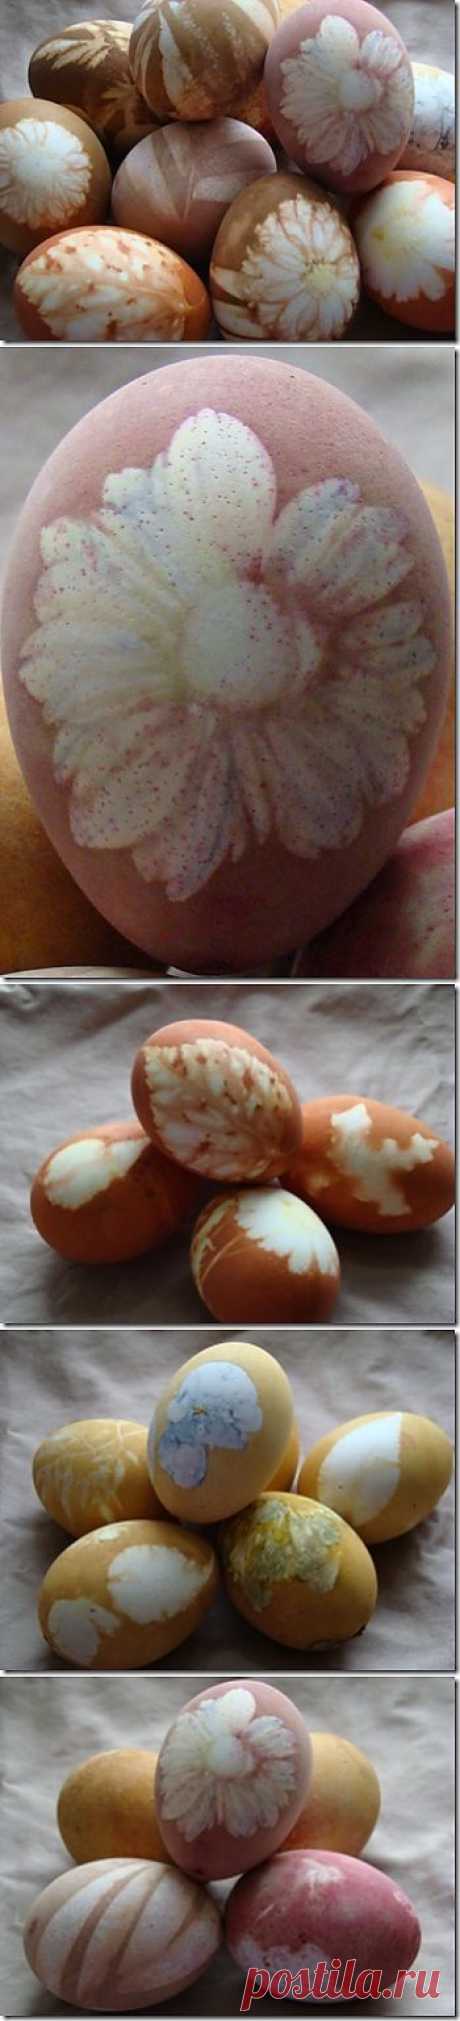 Цветочная роспись пасхальных яиц / KNITLY.com - блог о рукоделии